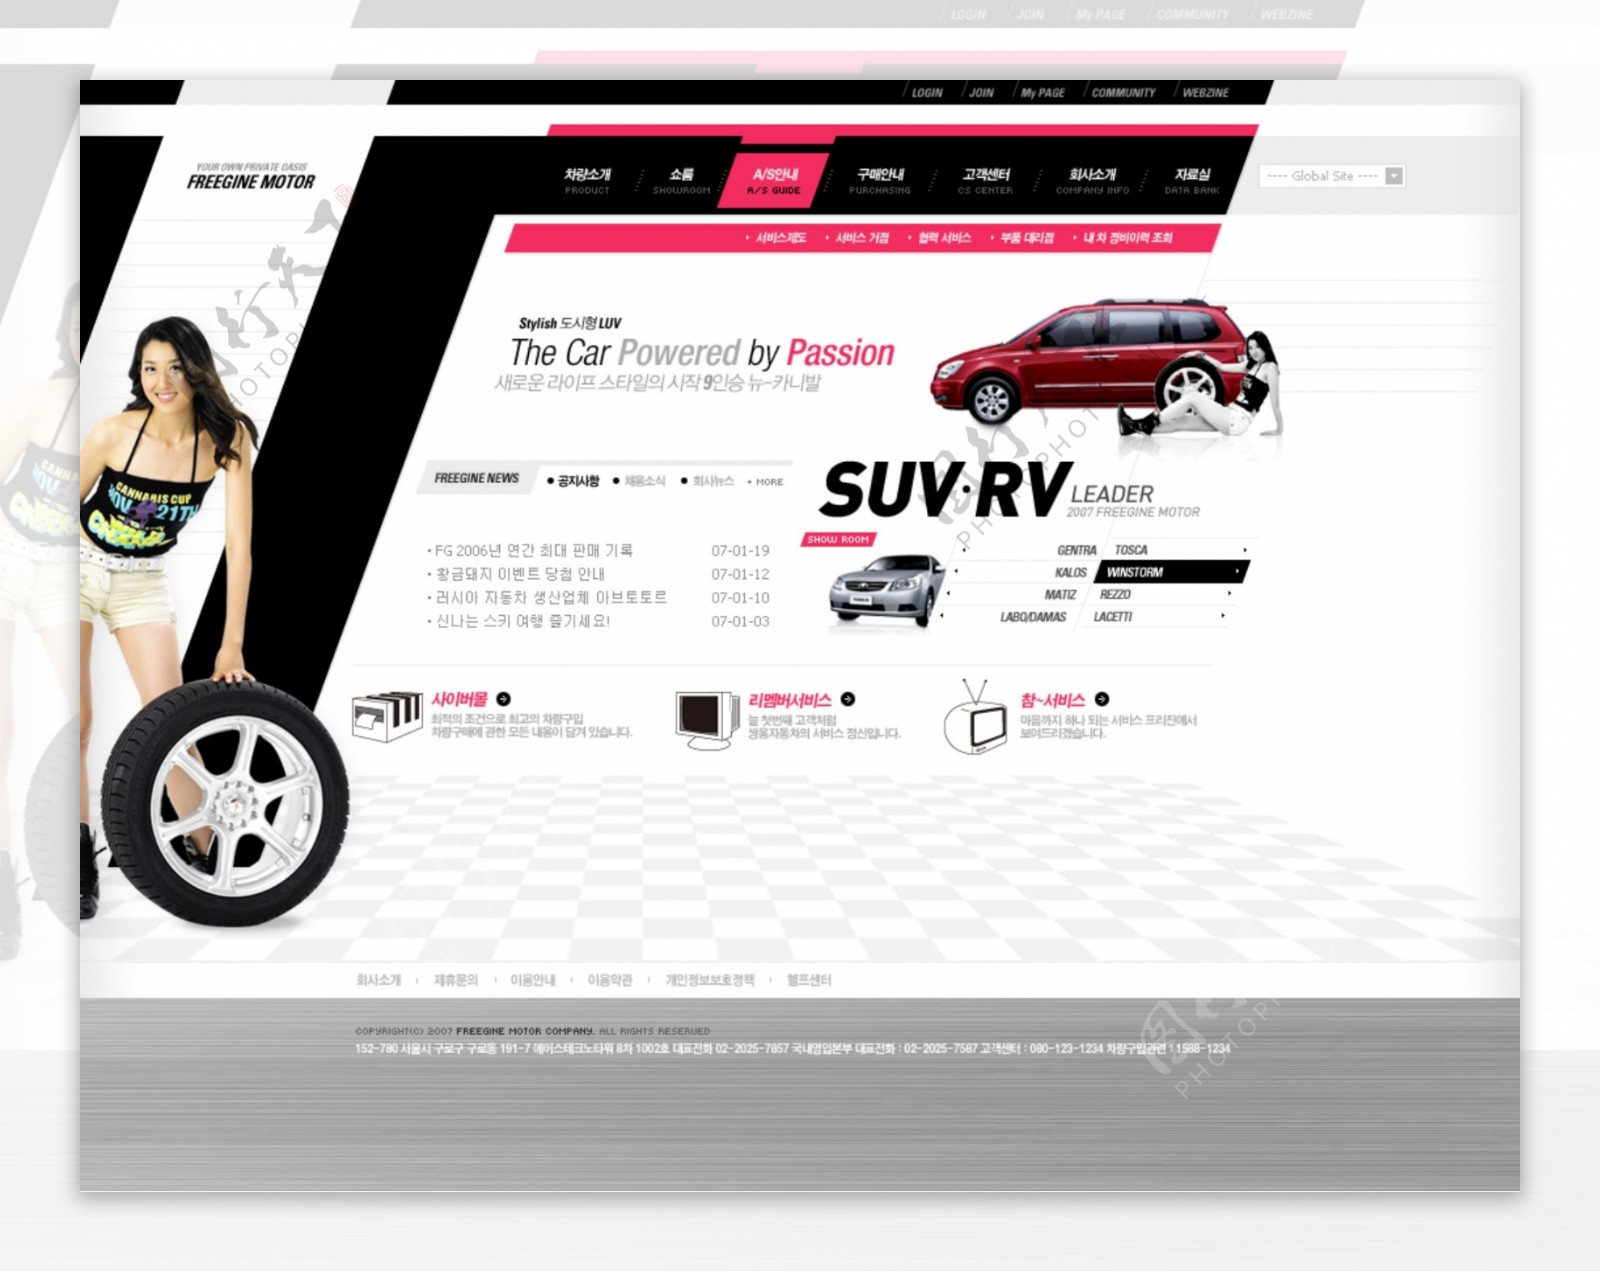 汽车展览销售企业网站模板